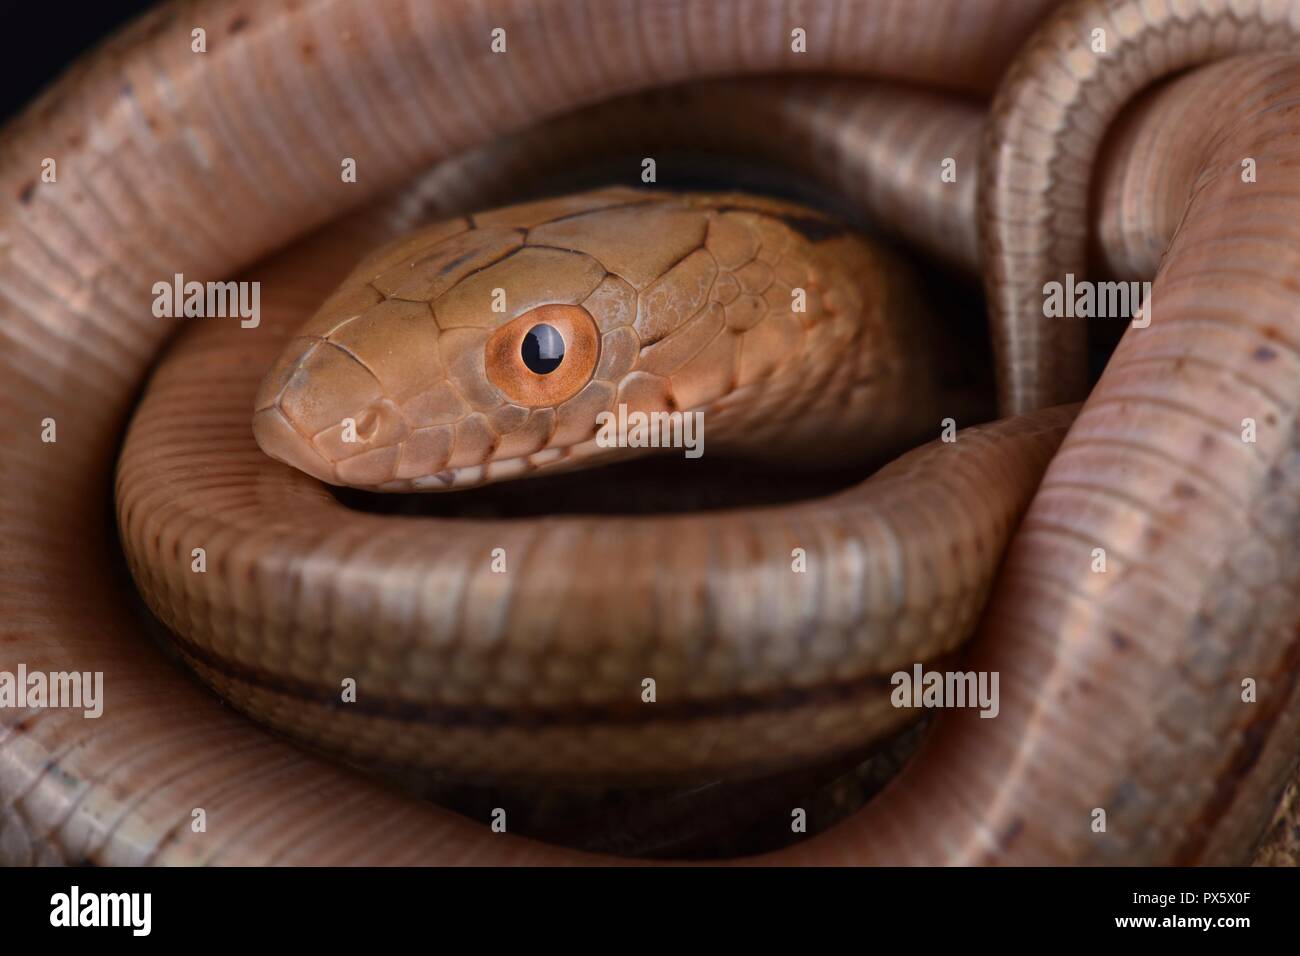 Le Roi Couleuvre obscure (Elaphe carinata) est une grande espèce de serpent trouvé en Chine, à Taiwan et dans certaines régions du Japon. Ils sont largement utilisés dans la médecine chinoise t Banque D'Images